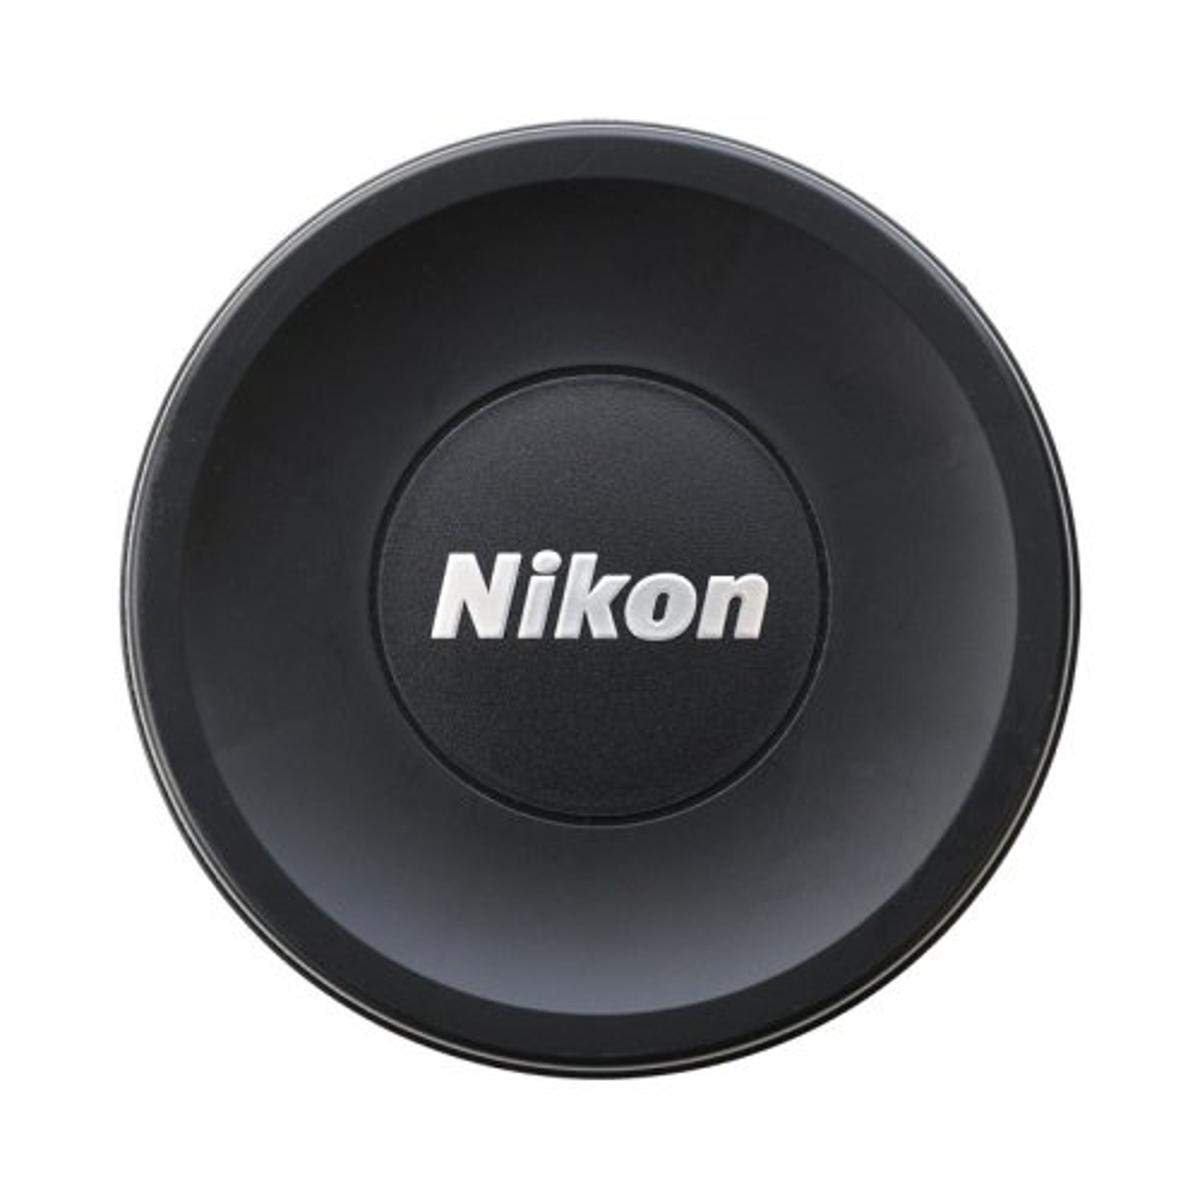 Nikon 4920 Objektivhaube für AF-S 14-24/2.8 ,